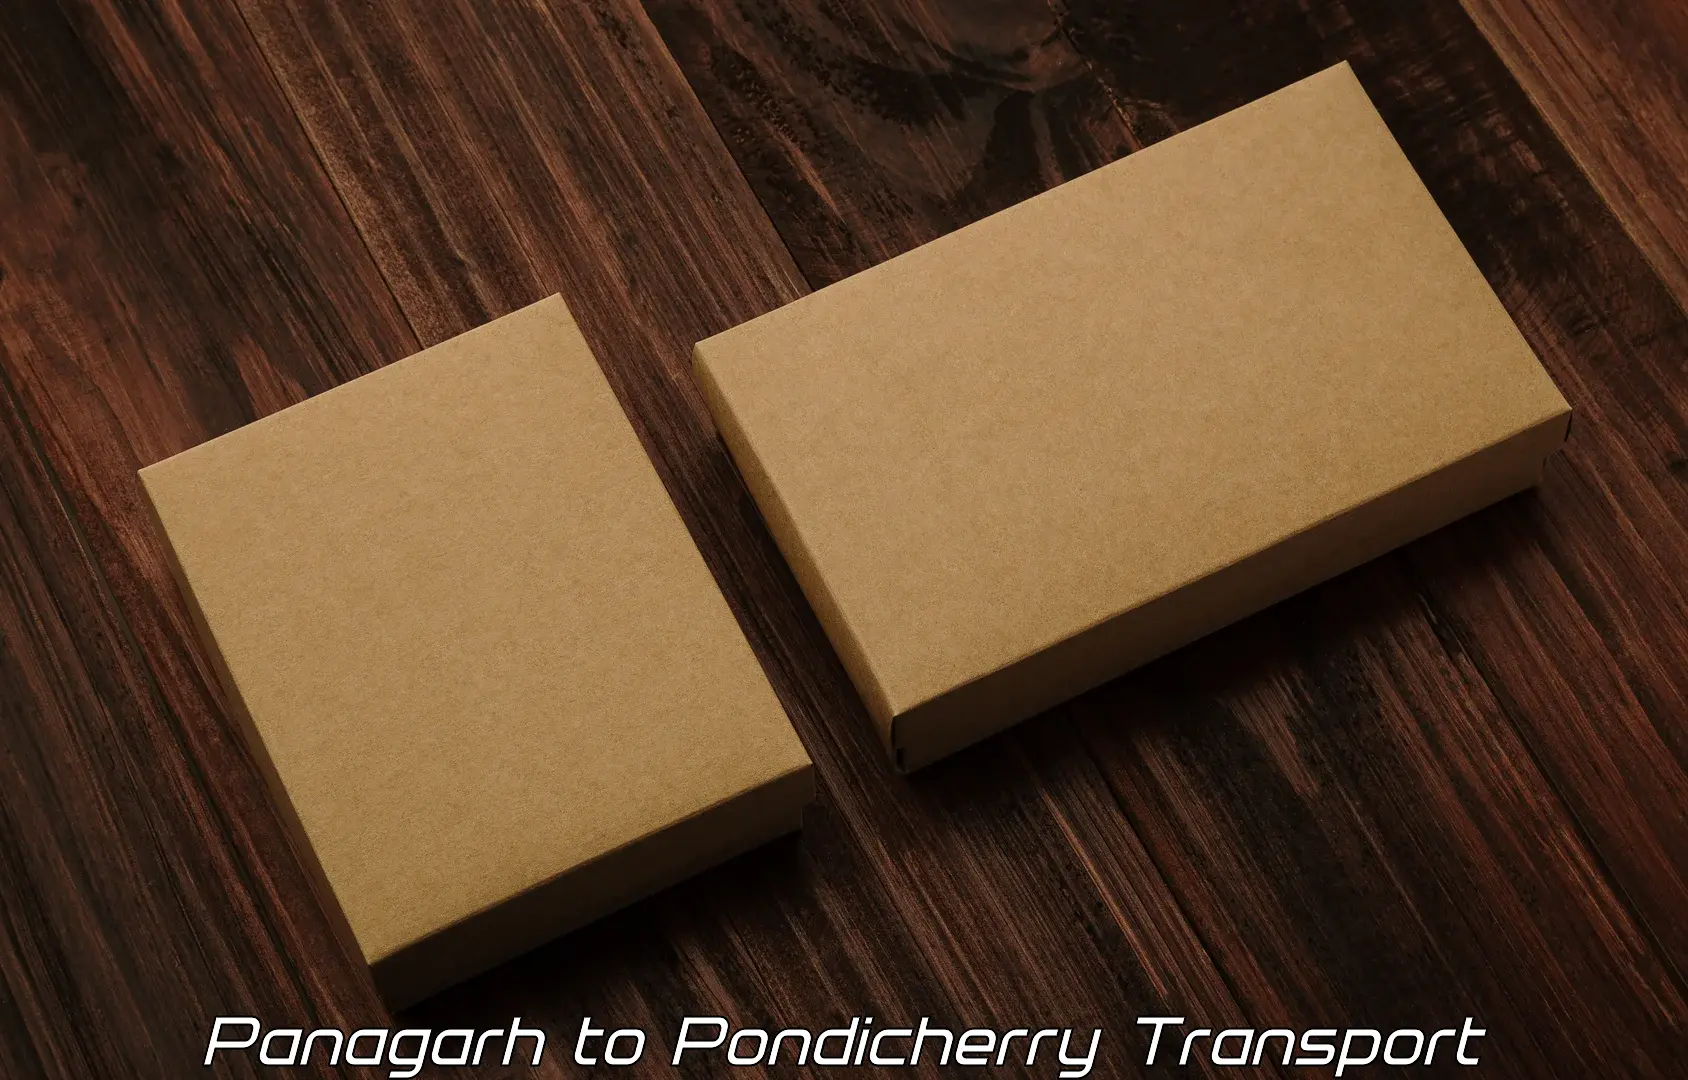 Nationwide transport services Panagarh to Pondicherry